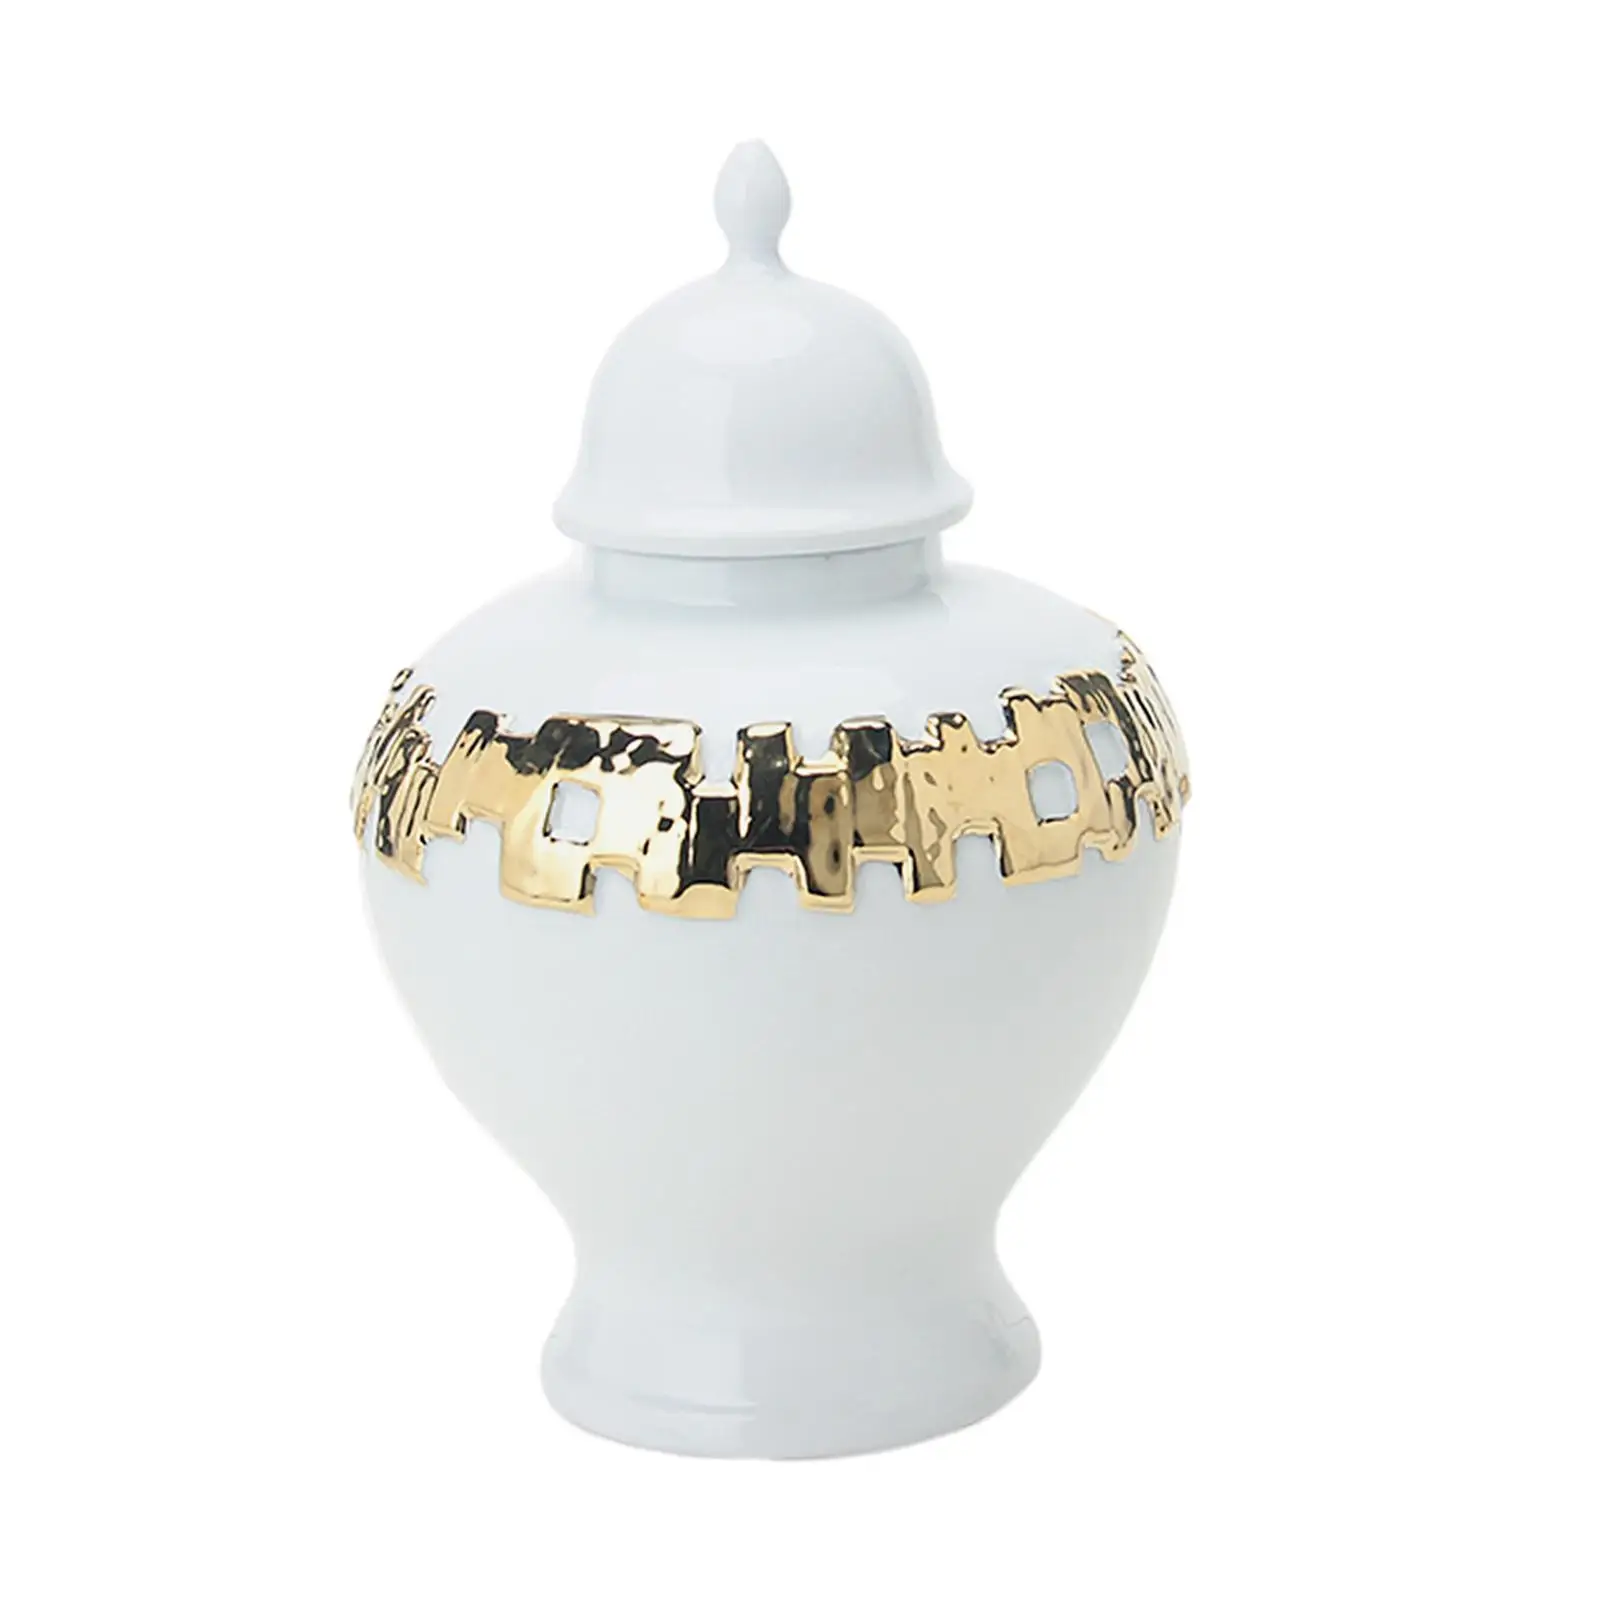 Ceramic Vase Ginger Jar with Lid 18x27.5cm Fine Glaze Finish Temple Jar